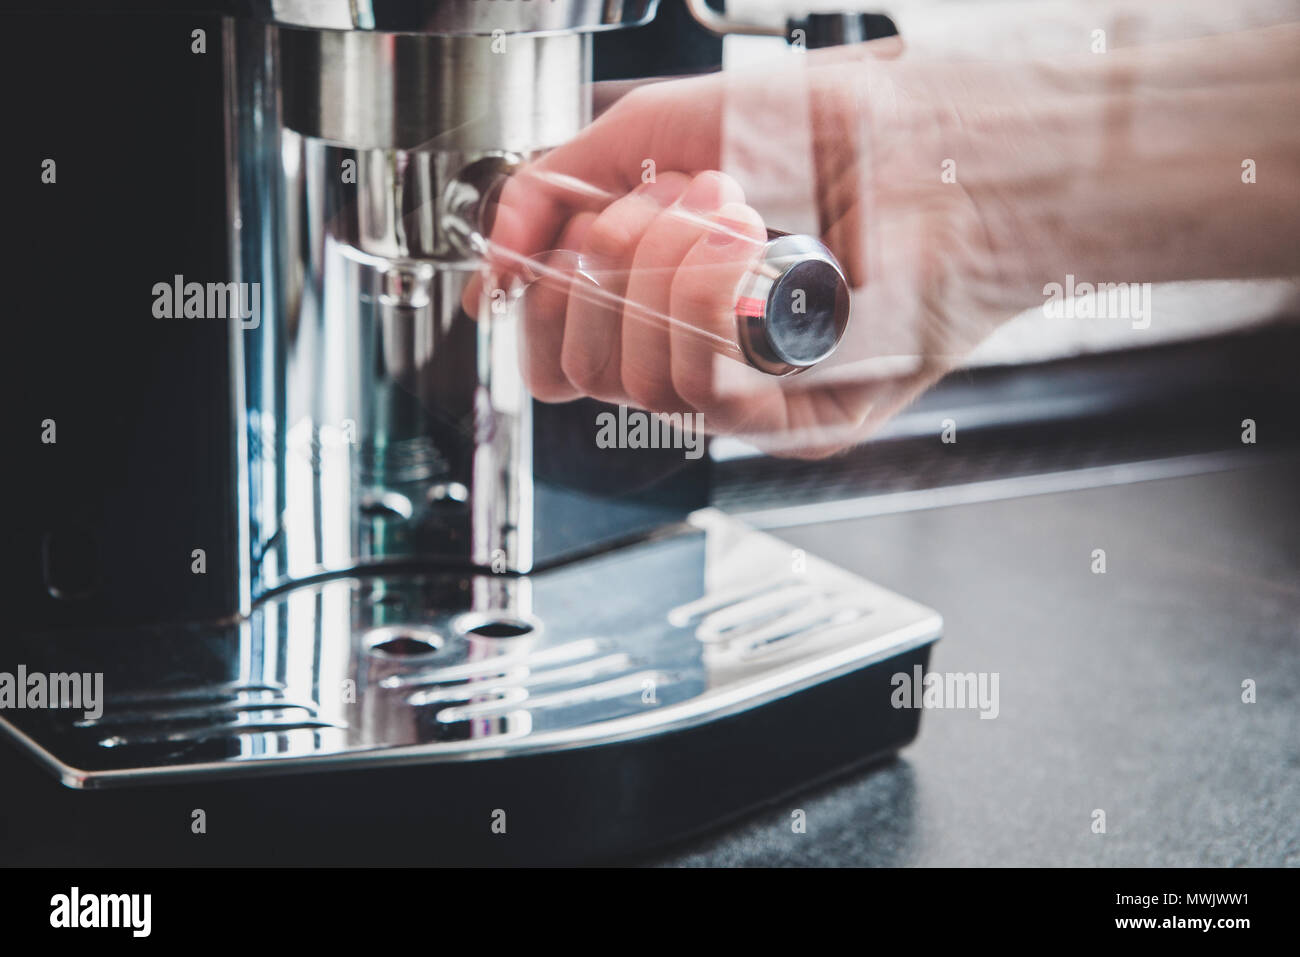 Brazo Automático Preparando Café En Cafetera Fotos, retratos